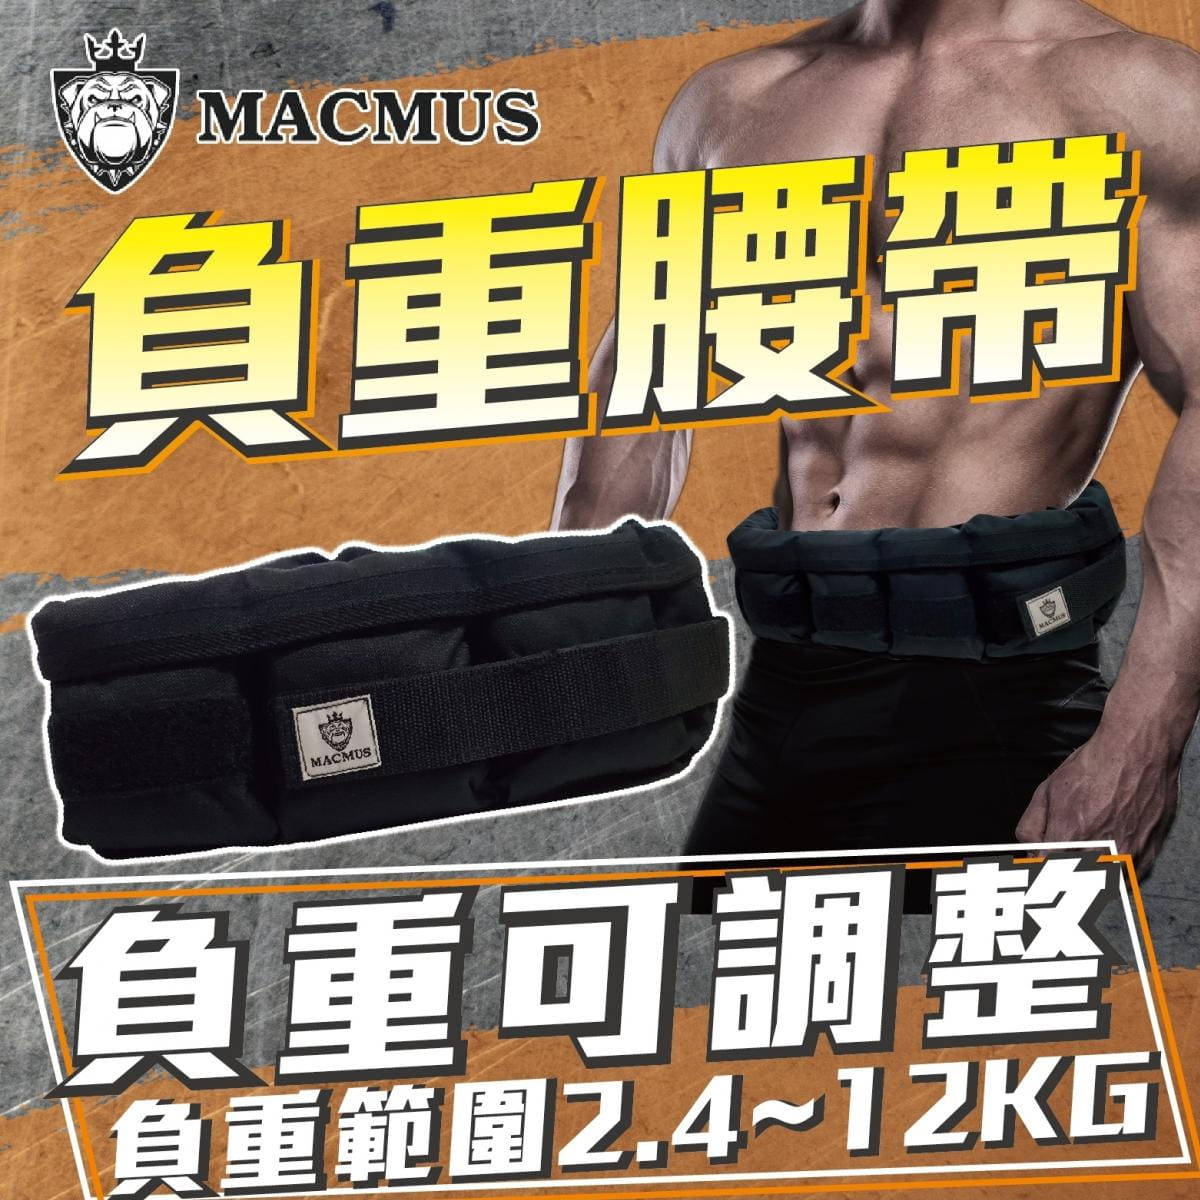 【MACMUS】8公斤負重腰帶｜8格式可調整重訓腰帶｜強化核心肌群鍛鍊腰部肌肉 0